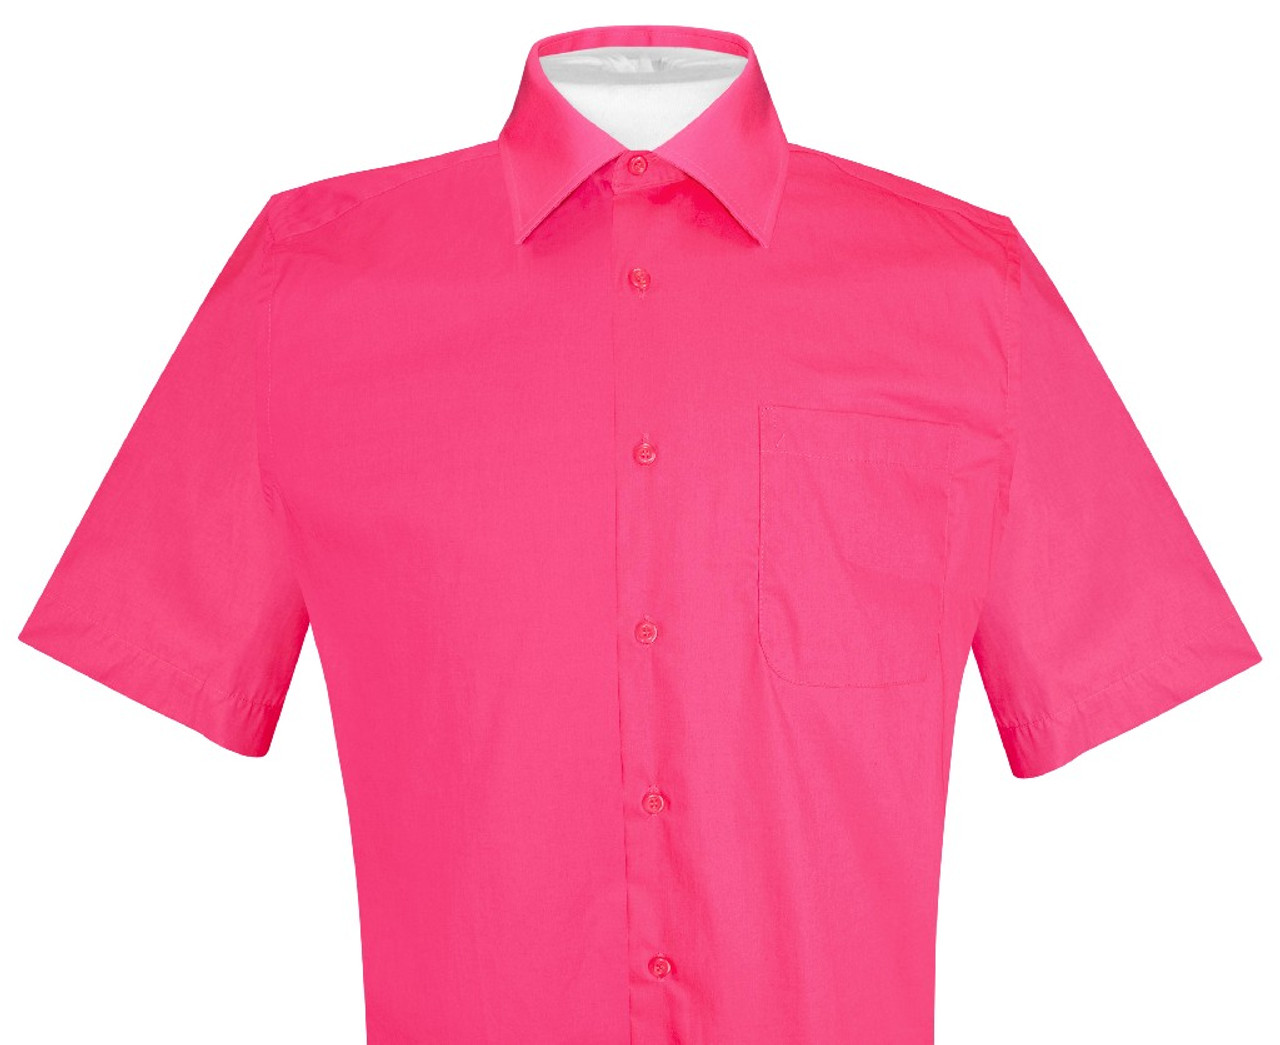 Mens Short Sleeve Dress Shirt | Hot Pink Fuchsia Dress Shirt